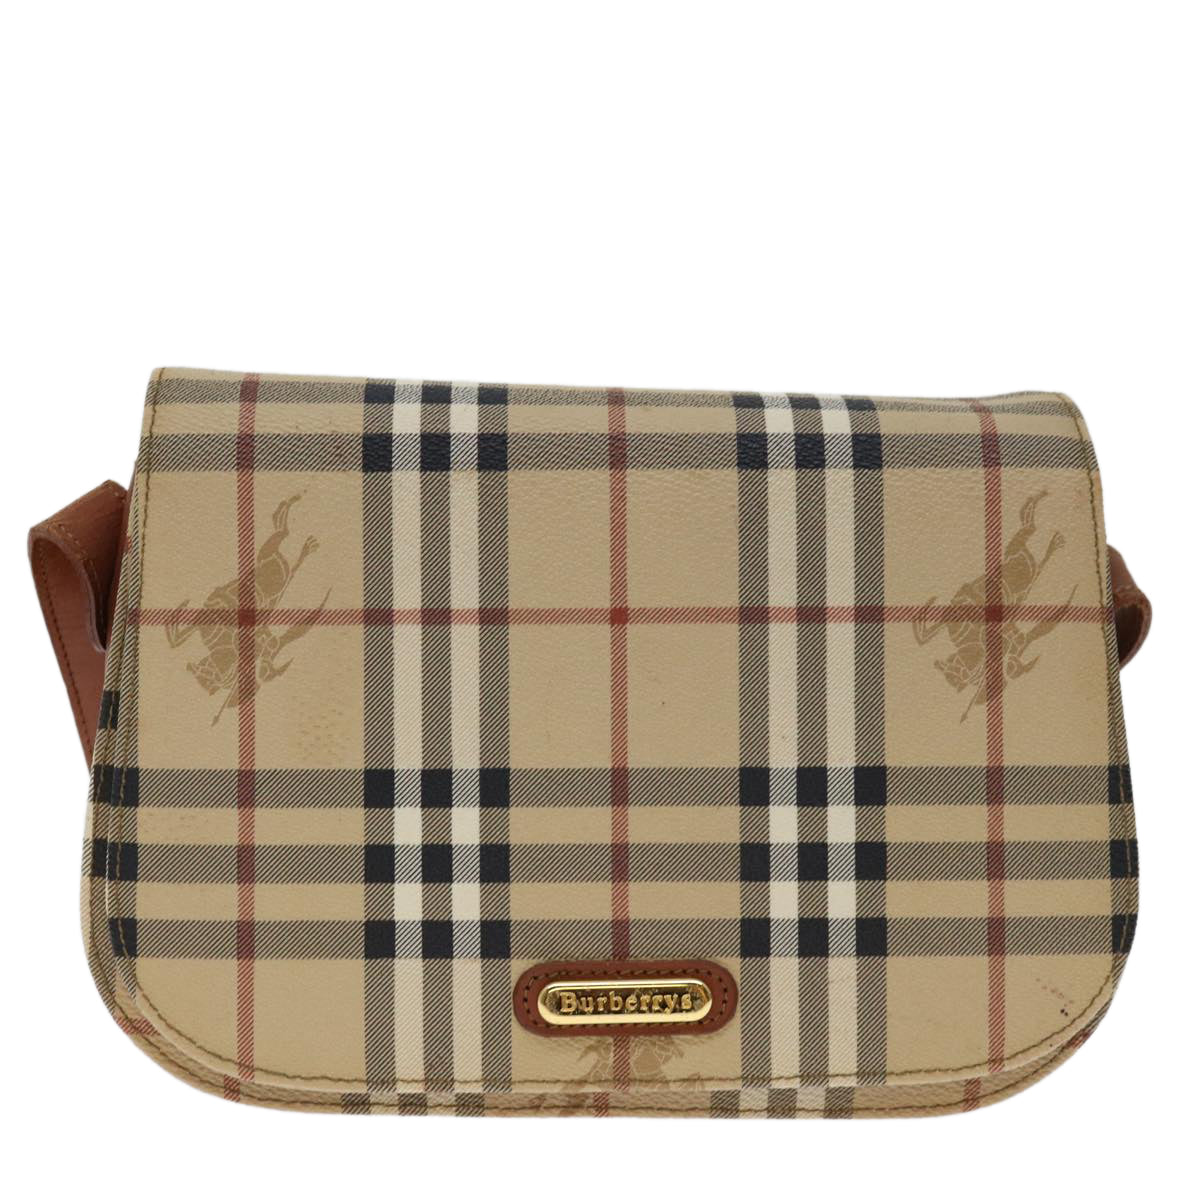 Burberrys Nova Check Shoulder Bag PVC Beige Brown Auth bs12773 - 0